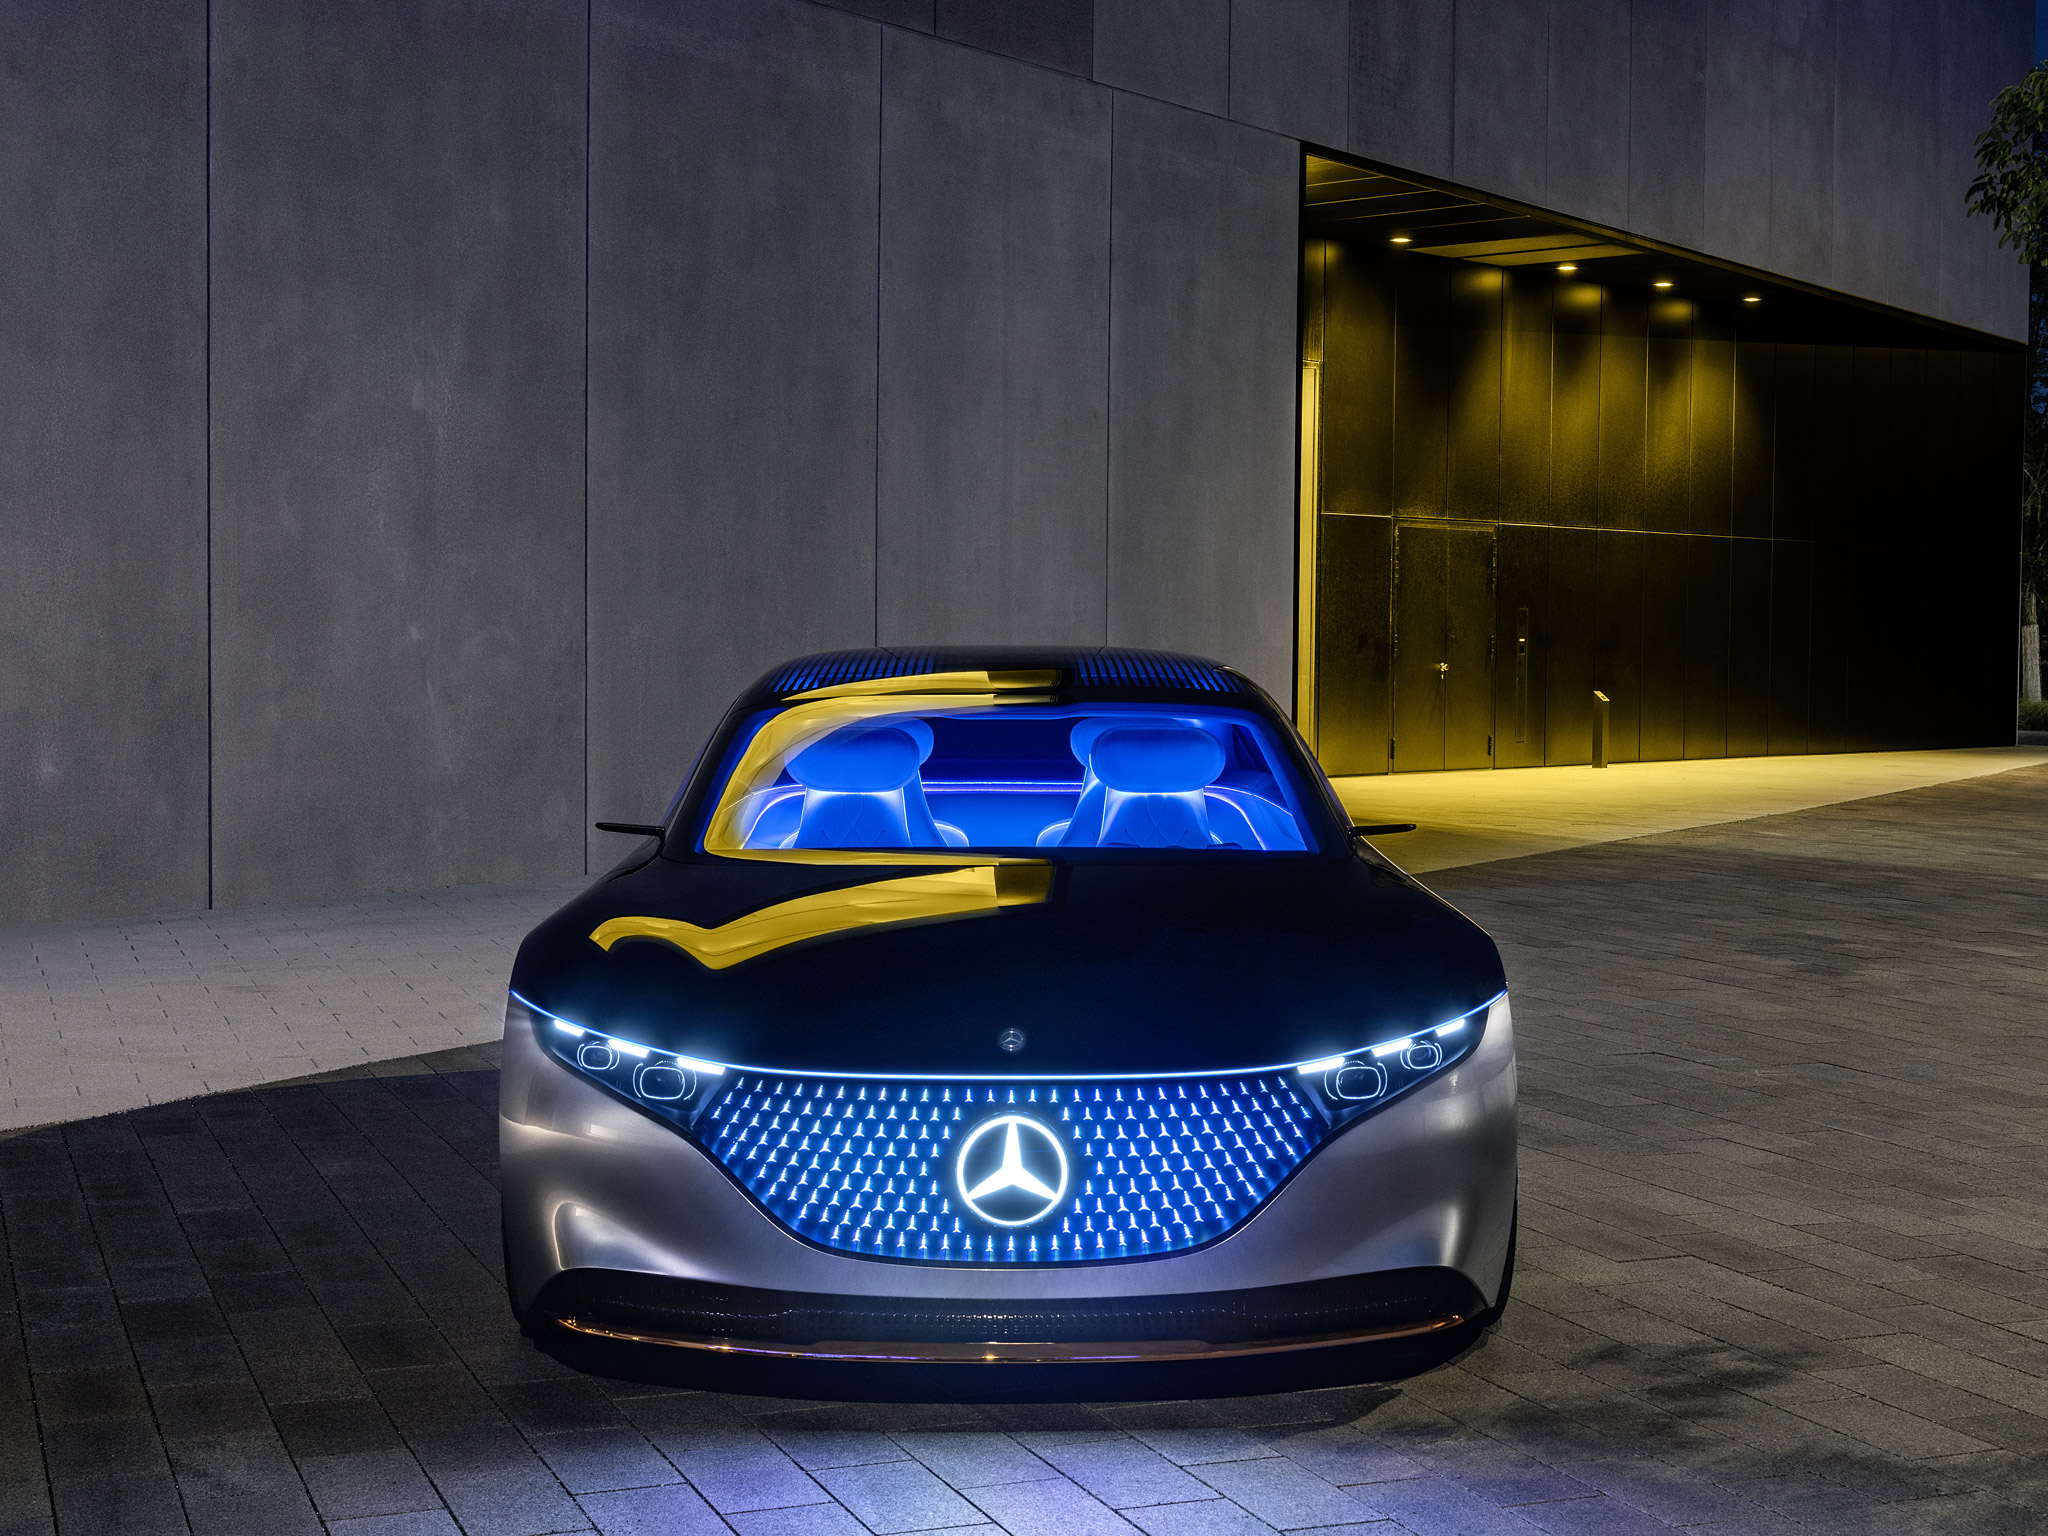  2019 Mercedes-Benz Vision EQS Concept Wallpaper.